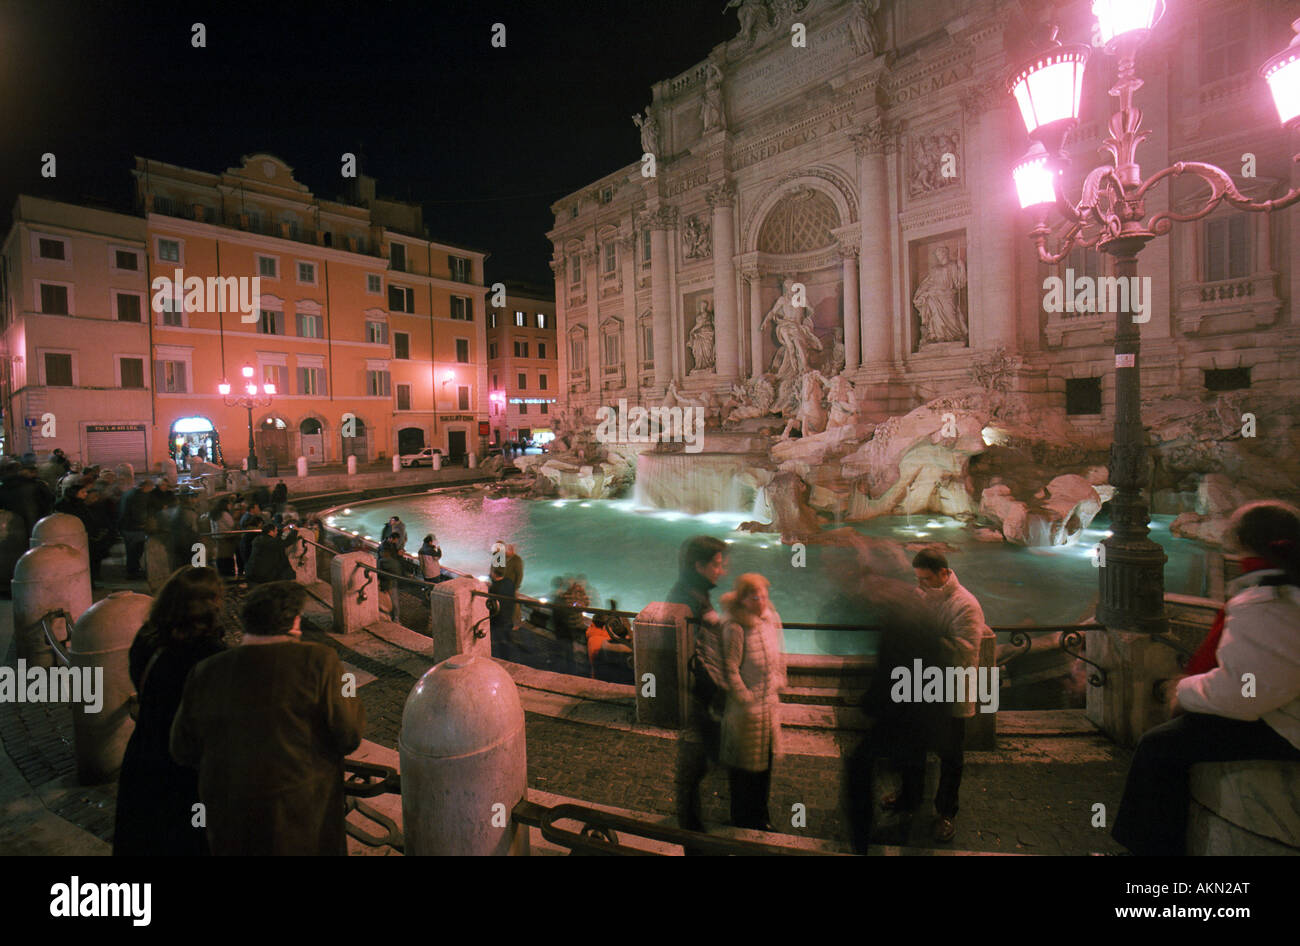 The Trevi Fountain and Poli Palace, Rome, Italy Stock Photo